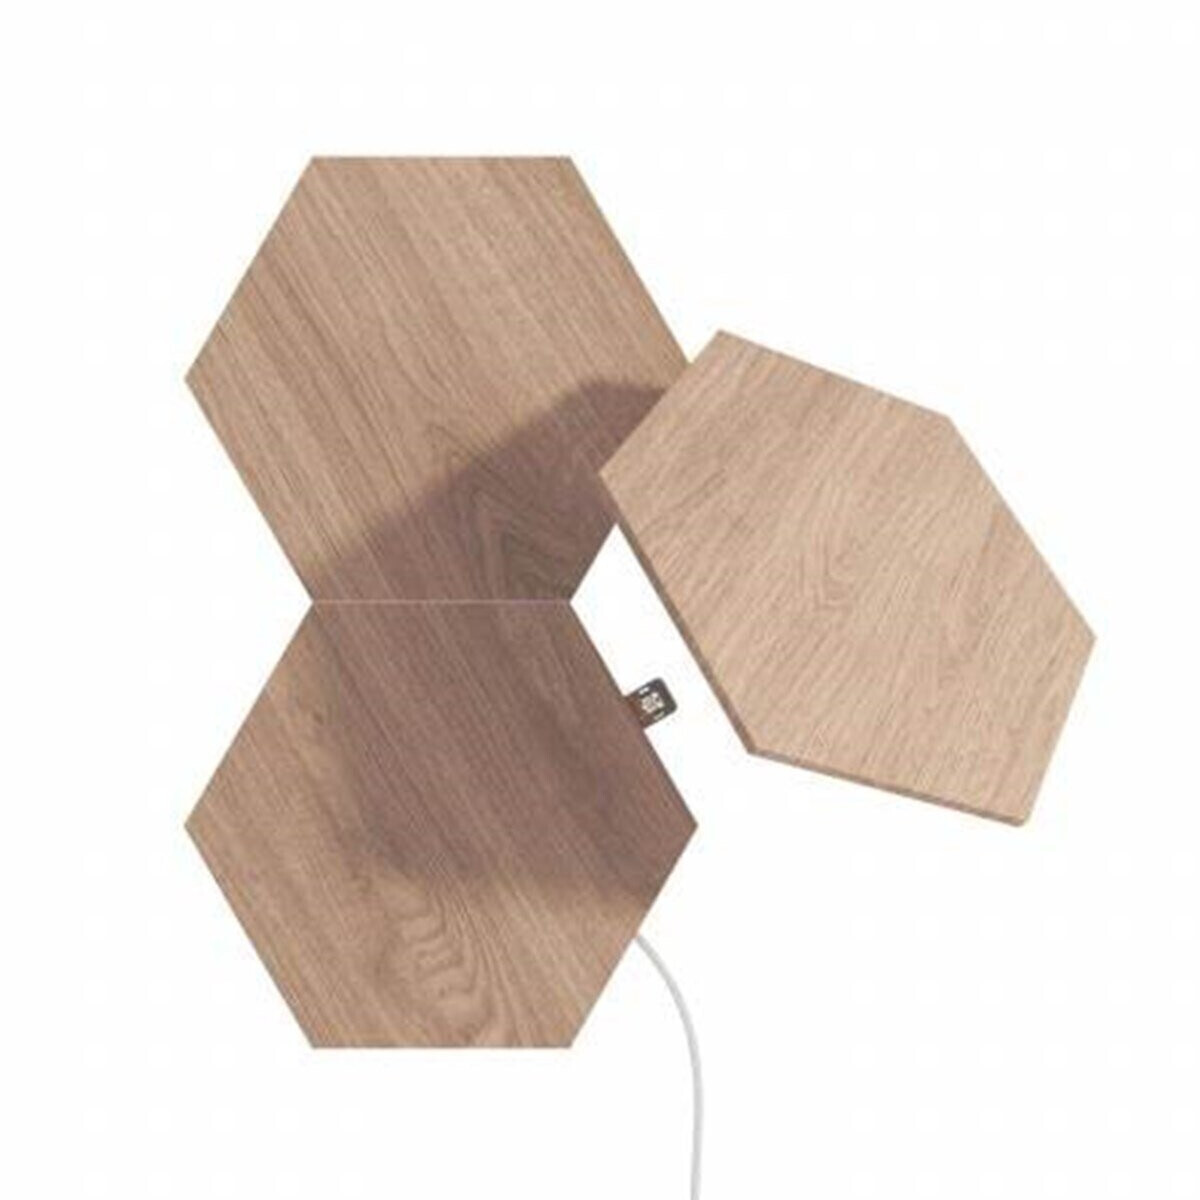 Nanoleaf Elements Hexagons Wood Look Preisvergleich ab (NL52-E-0001HB-3PK) | bei € Licht-Panele 3 59,99 Erweiterungsset